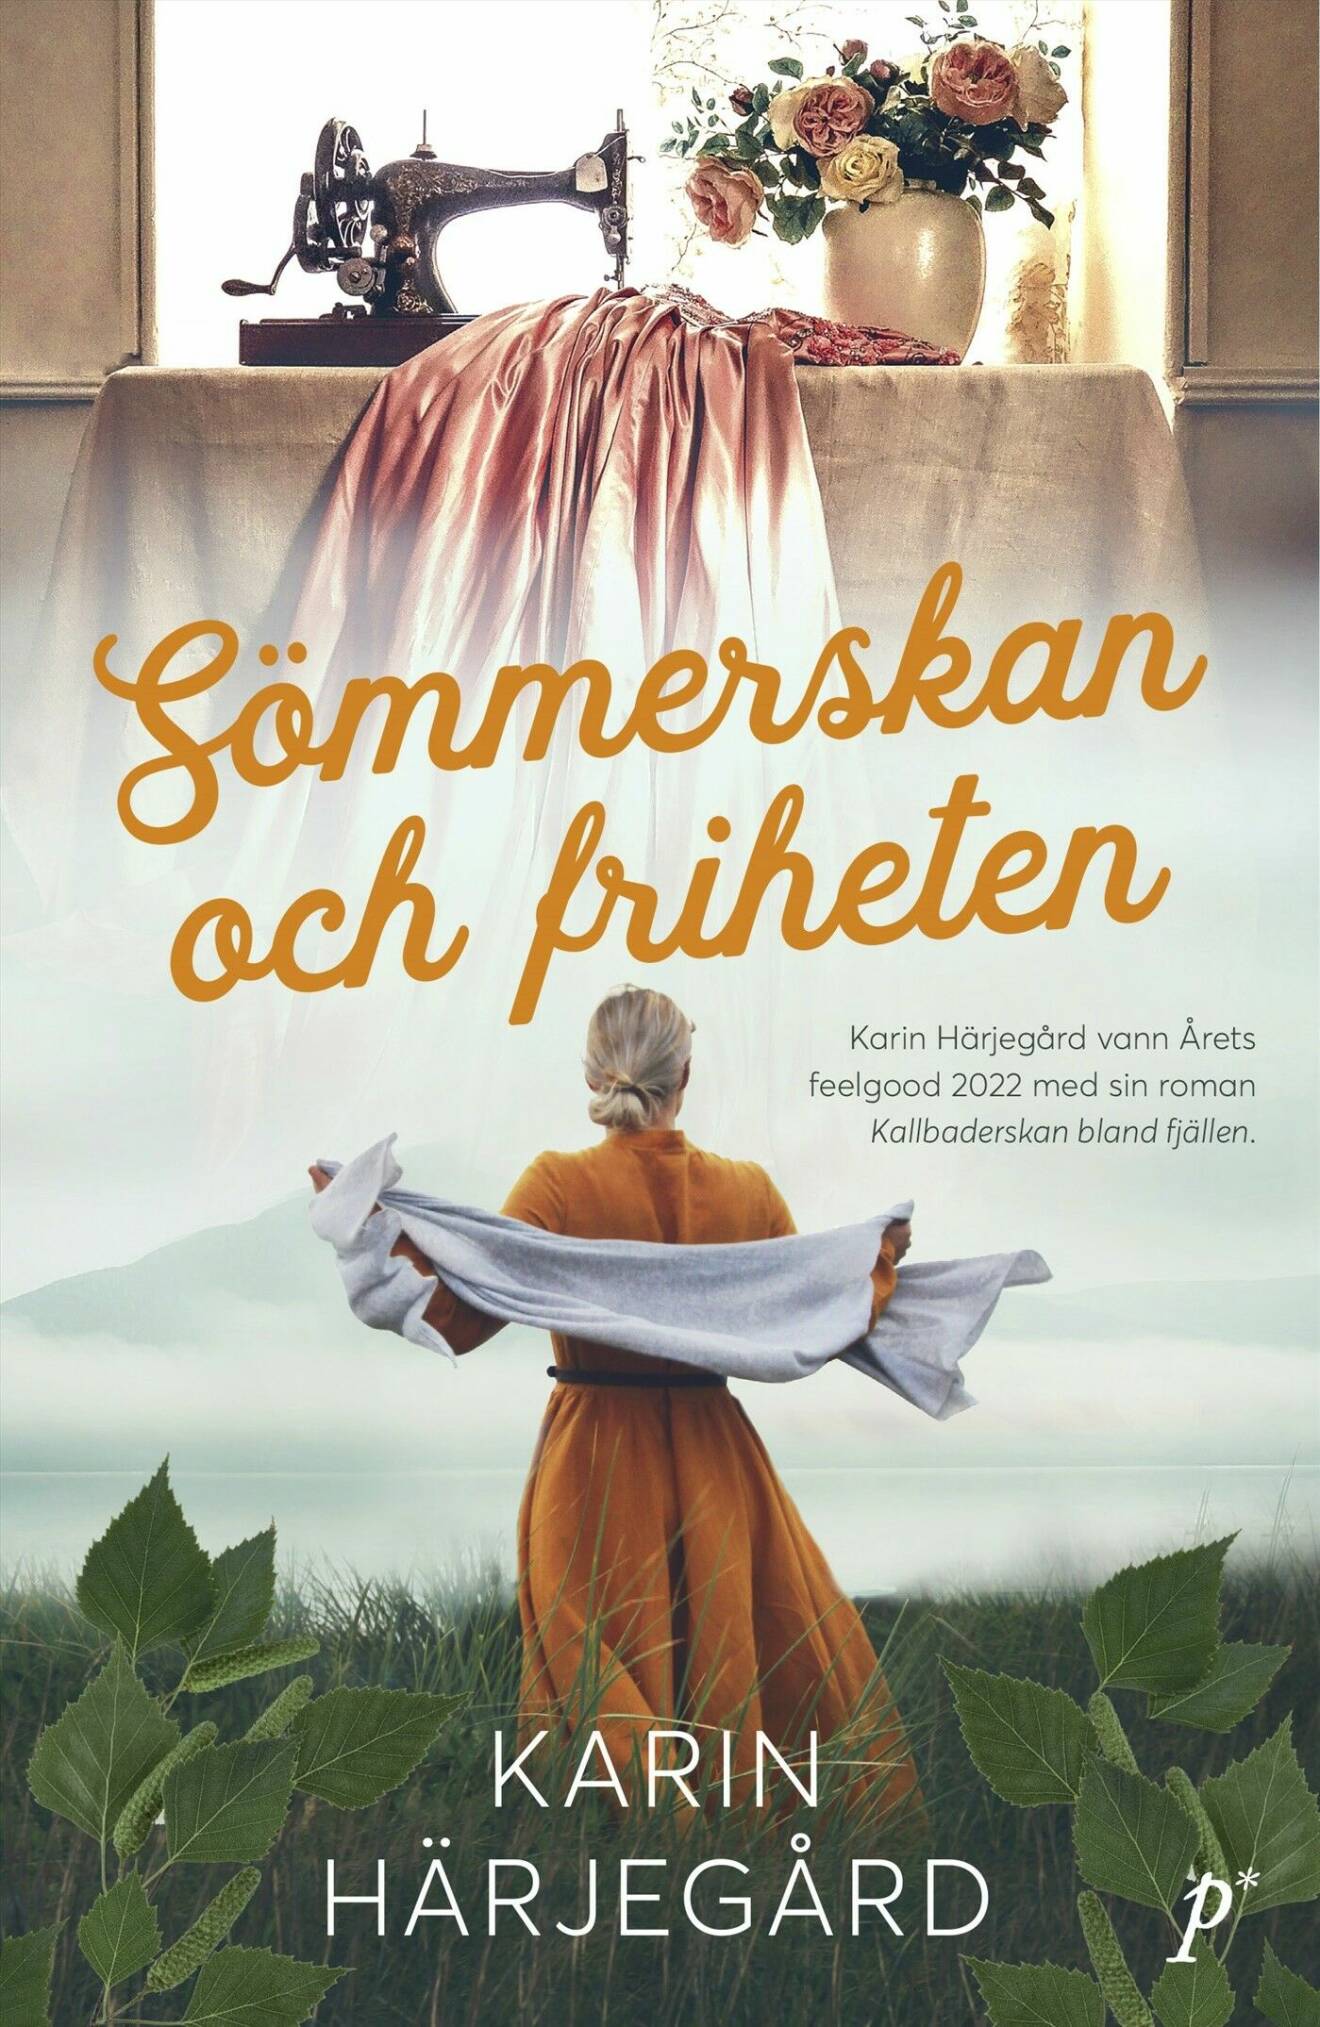 Sömmerskan och friheten av Karin Härjegård (Printz).